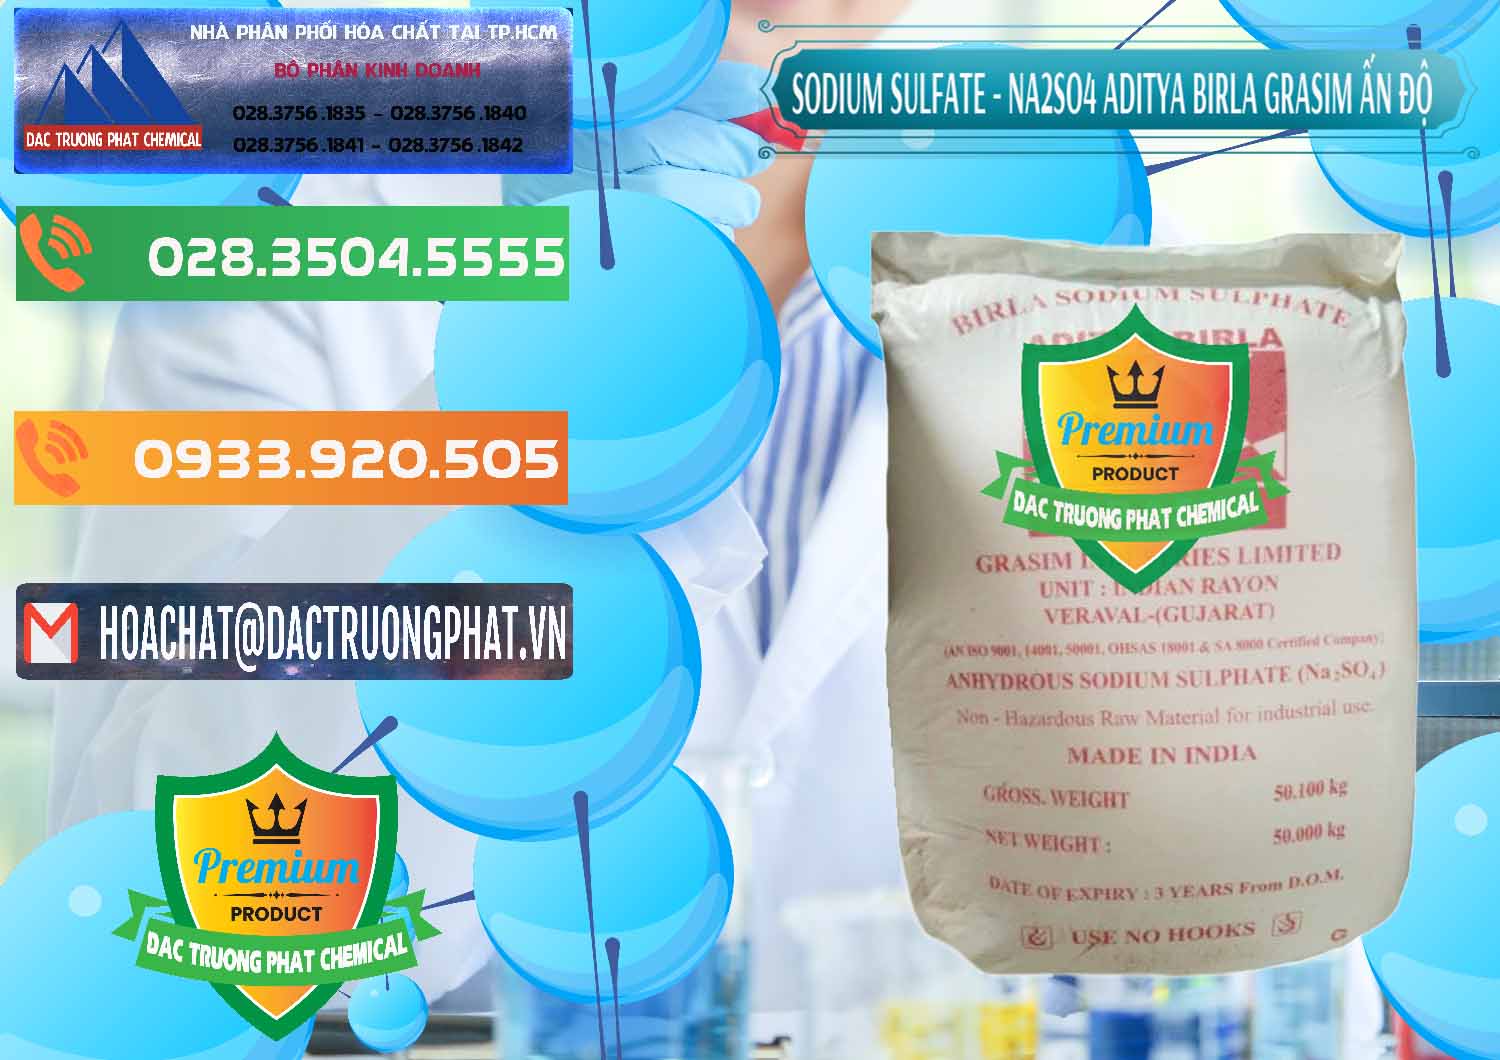 Công ty chuyên bán và cung cấp Sodium Sulphate - Muối Sunfat Na2SO4 Grasim Ấn Độ India - 0356 - Nơi chuyên phân phối & nhập khẩu hóa chất tại TP.HCM - hoachatxulynuoc.com.vn